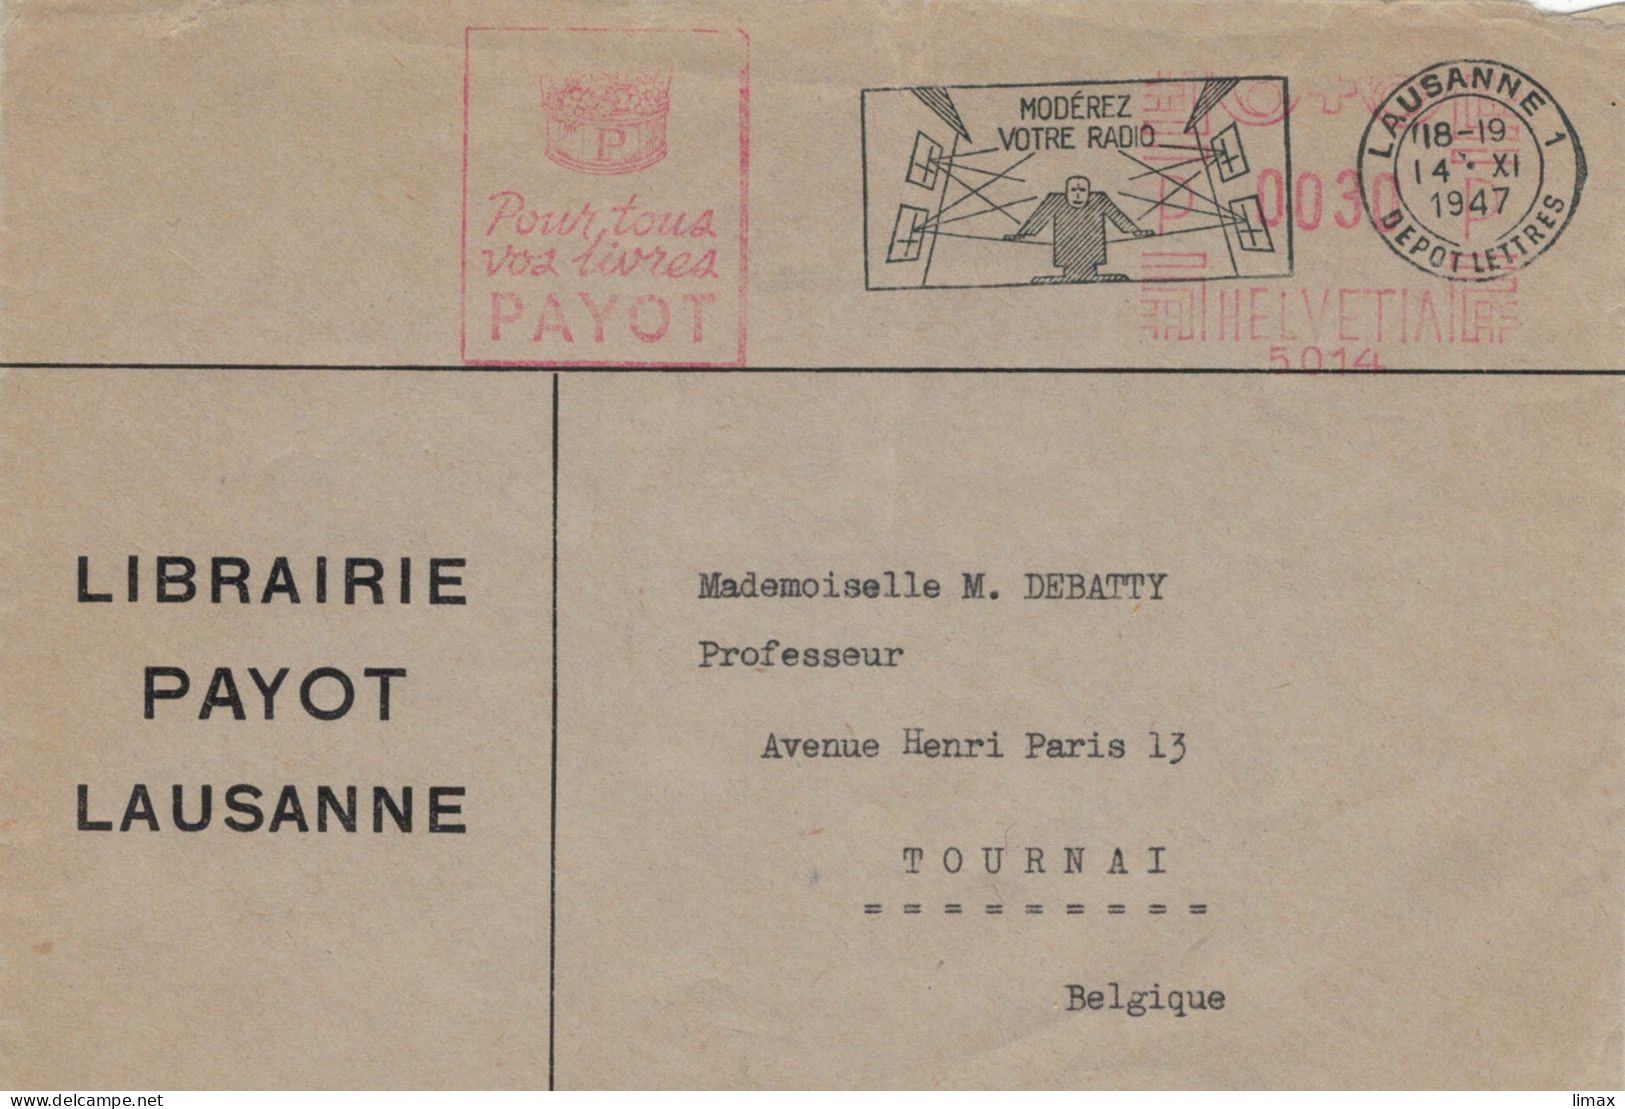 Librairie Payot Lausanne 1947 Stempel Nr. 5014 Moderez Votre Radio - Lautstärke > Prof. M. Debatty Tournai - Affranchissements Mécaniques